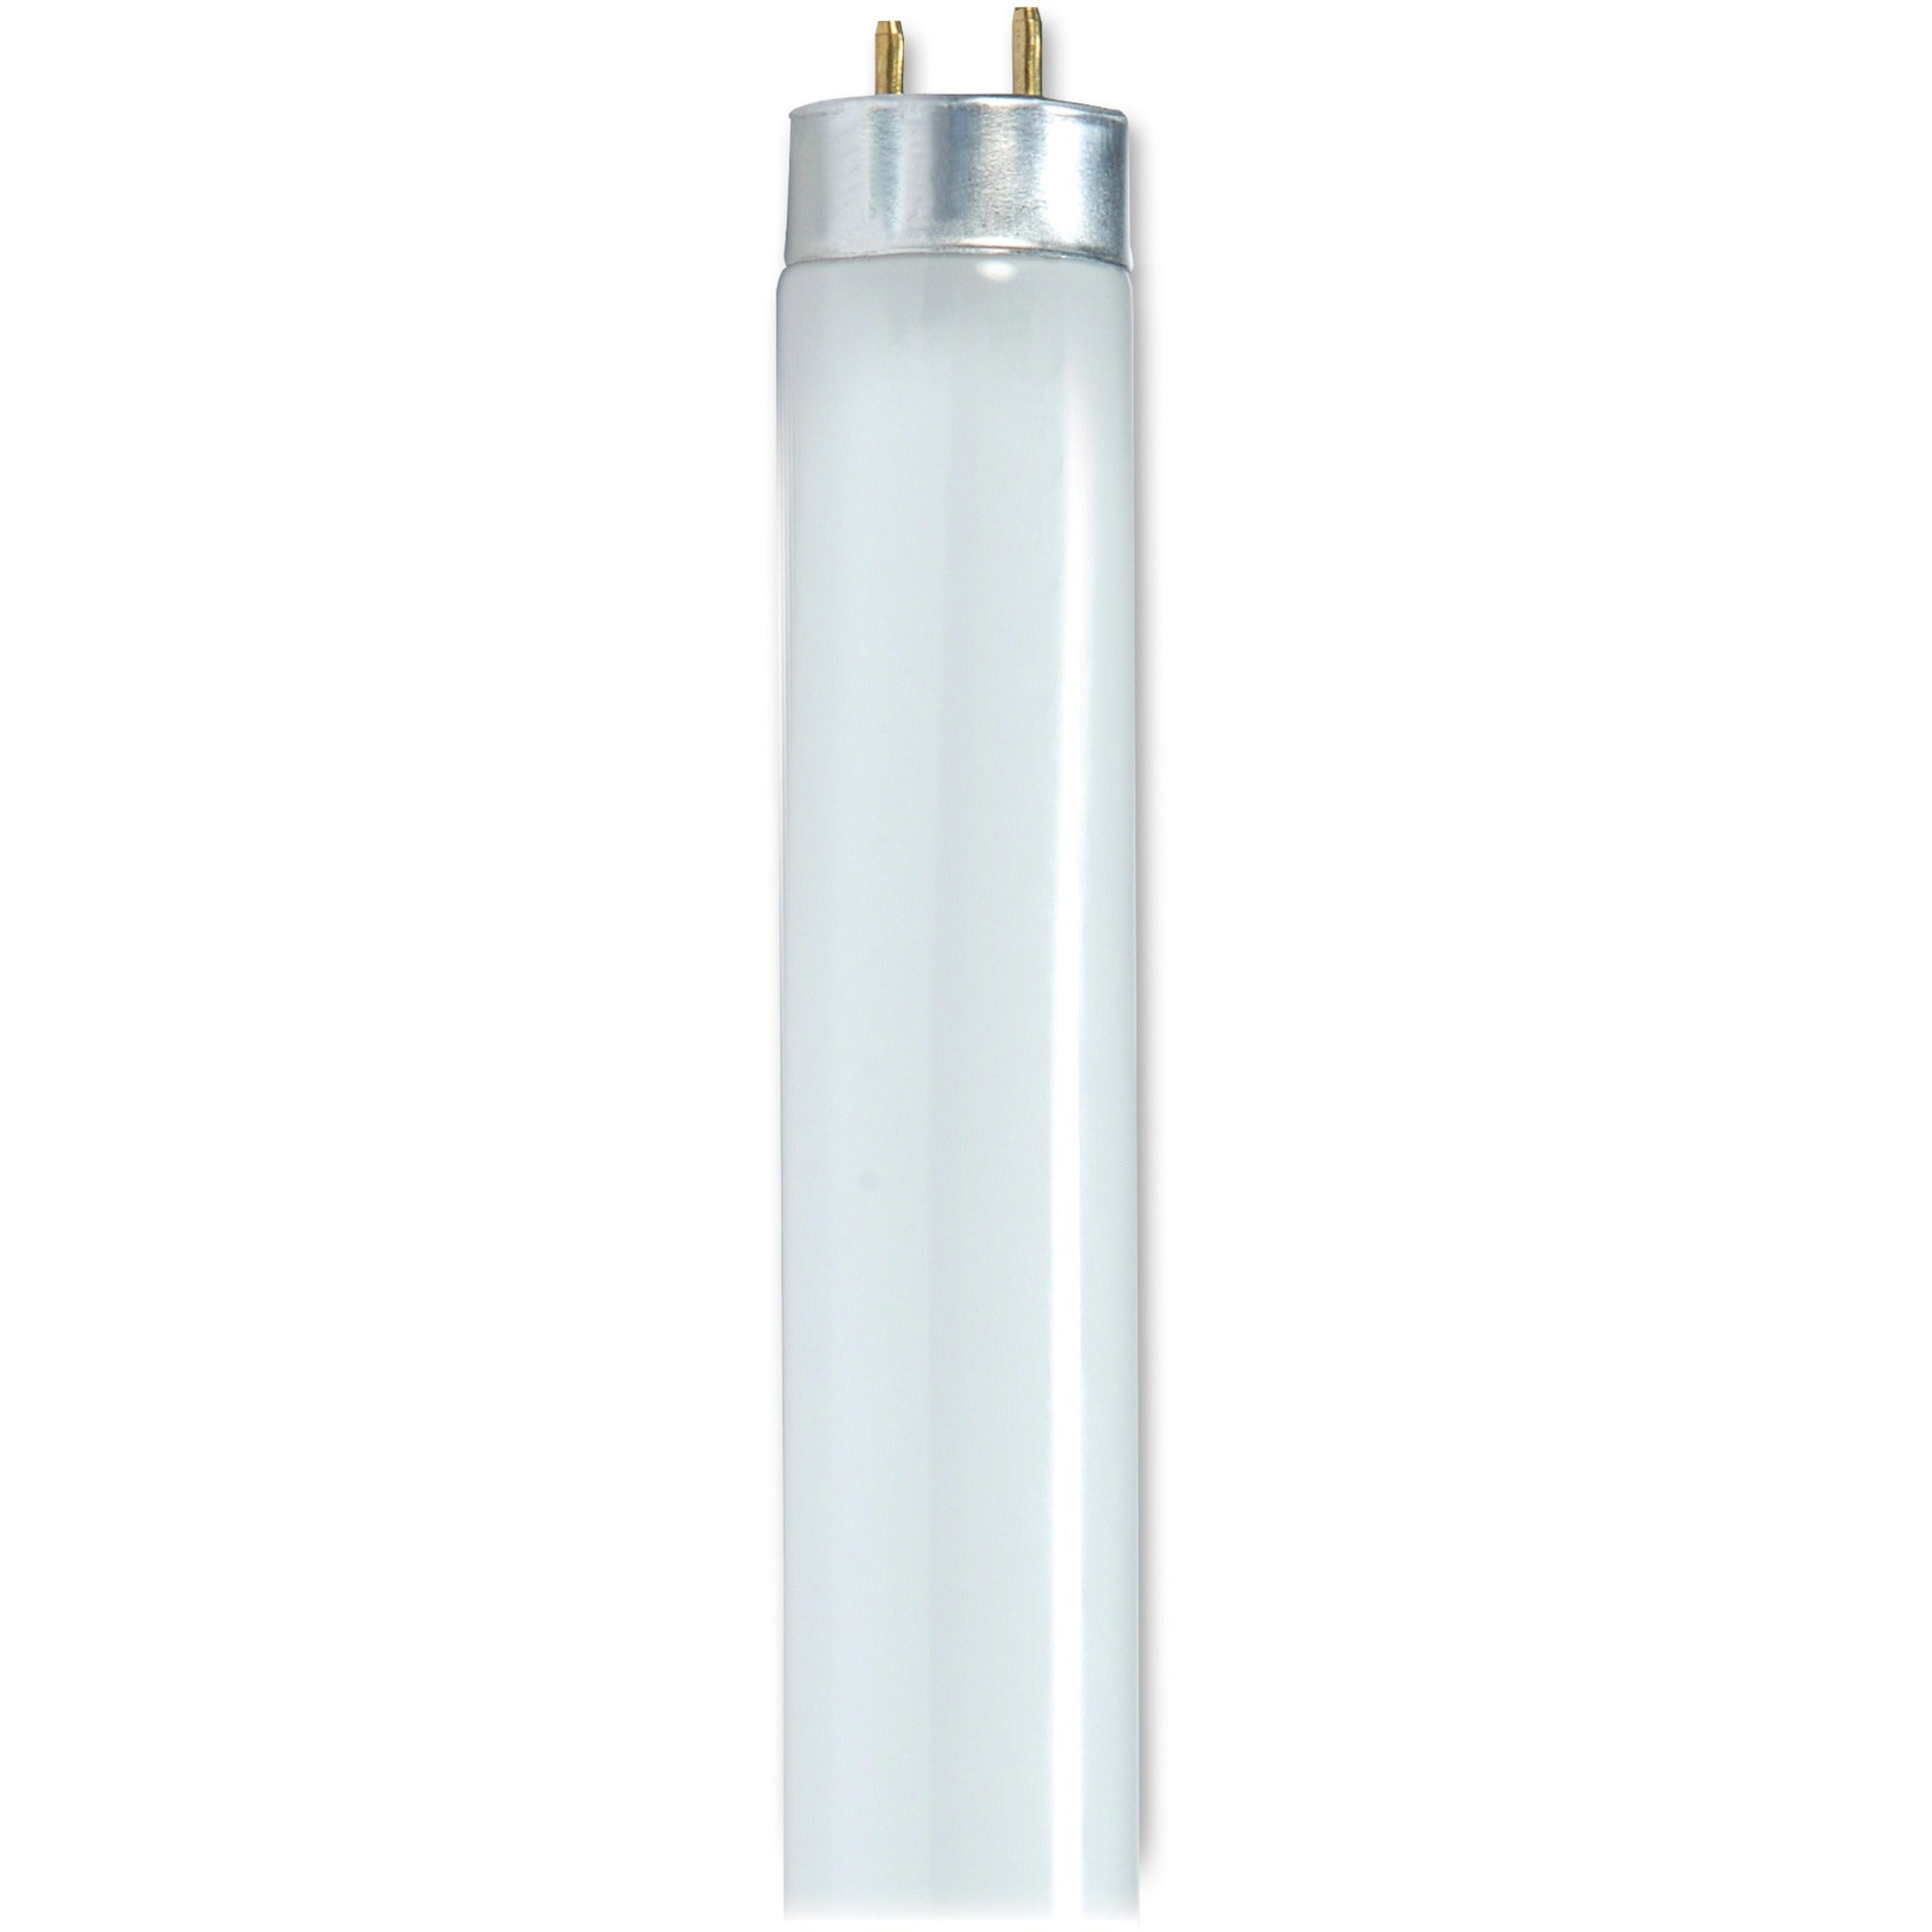 Satco 32-watt 48" T8 Fluorescent Bulbs - 32 W - 120 V AC - 3050 lm - T8 Size - Cool White Light Color - 24000 Hour - 6920.3degF (3826.8degC) Color Temperature - 85 CRI - 6 / Carton - 